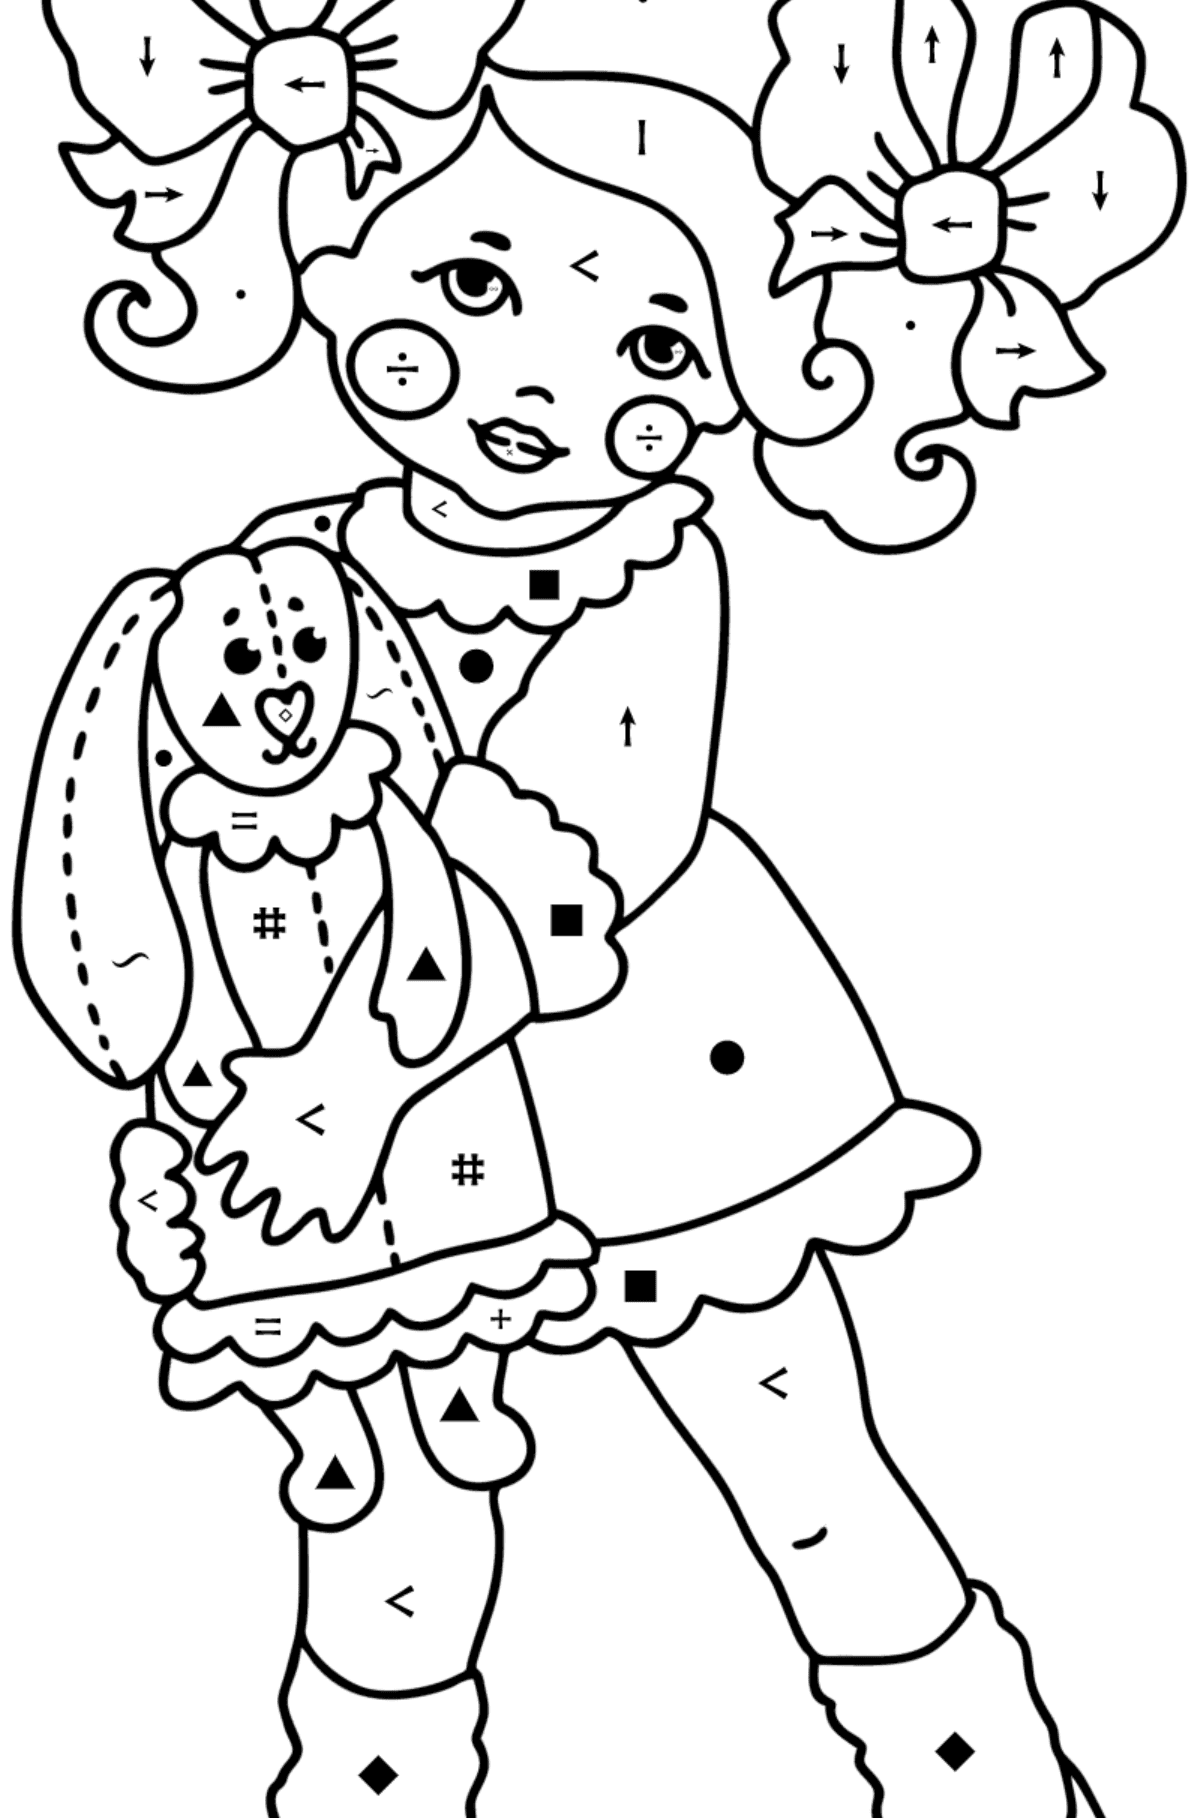 Boyama sayfası Kız ve tavşan - Sembollerle Boyama çocuklar için